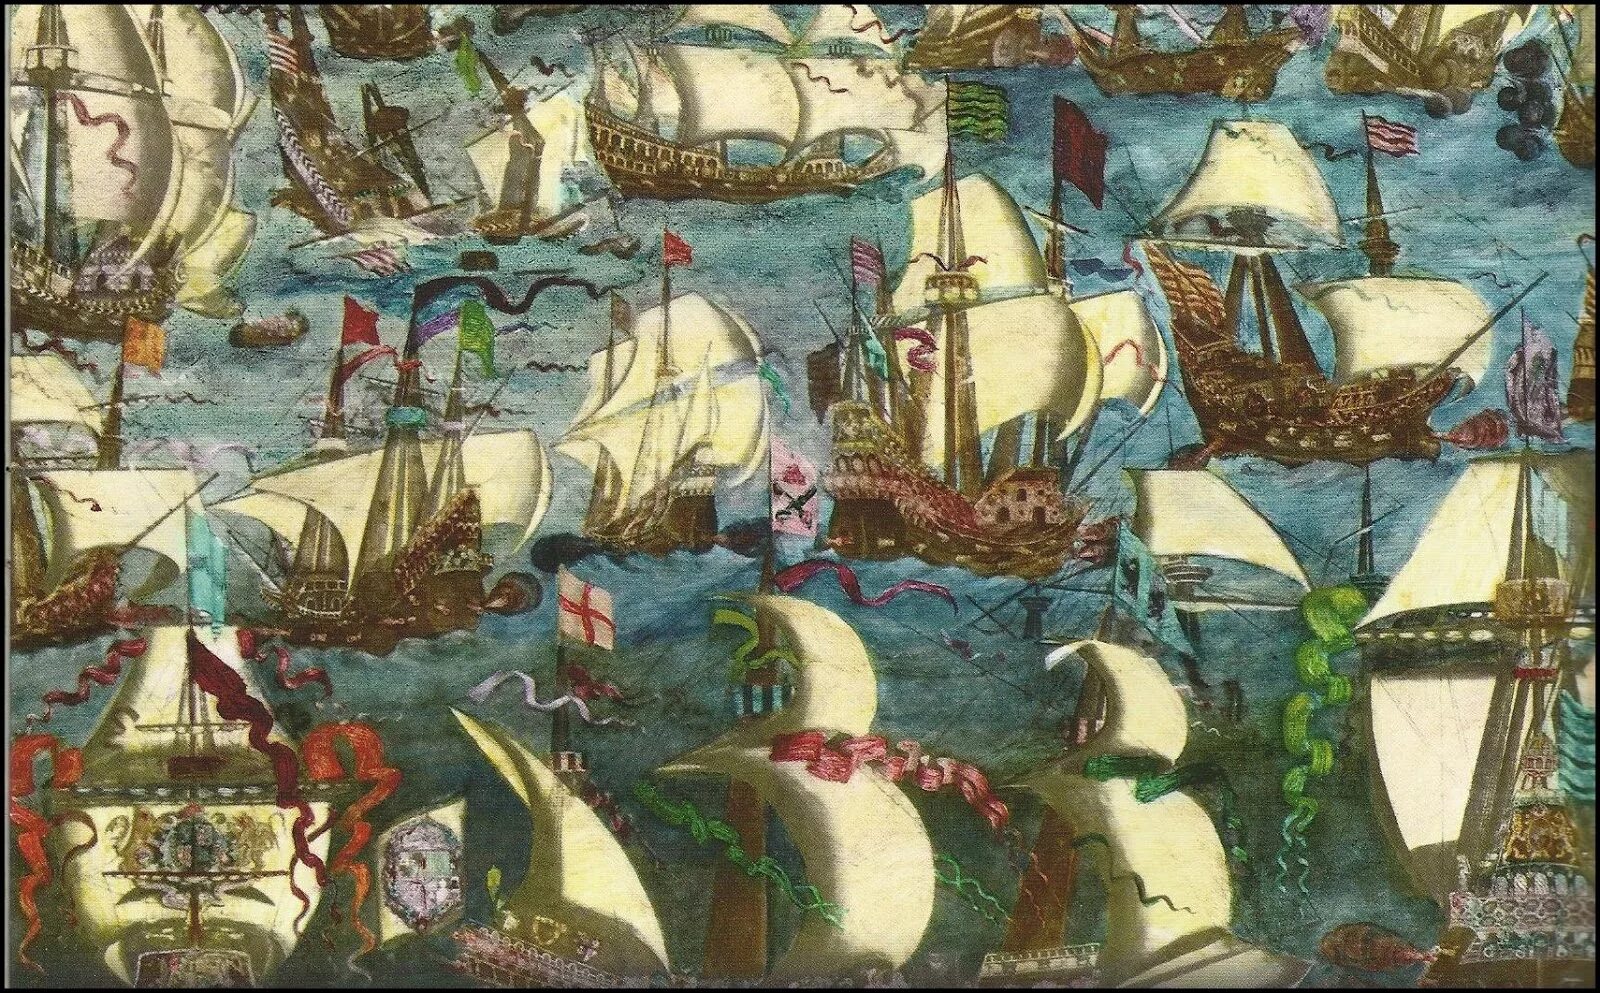 Гибель непобедимой Армады 1588 г. Испанская непобедимая Армада 1588. Разгром испанской непобедимой Армады. Гравелинское сражение 1588.